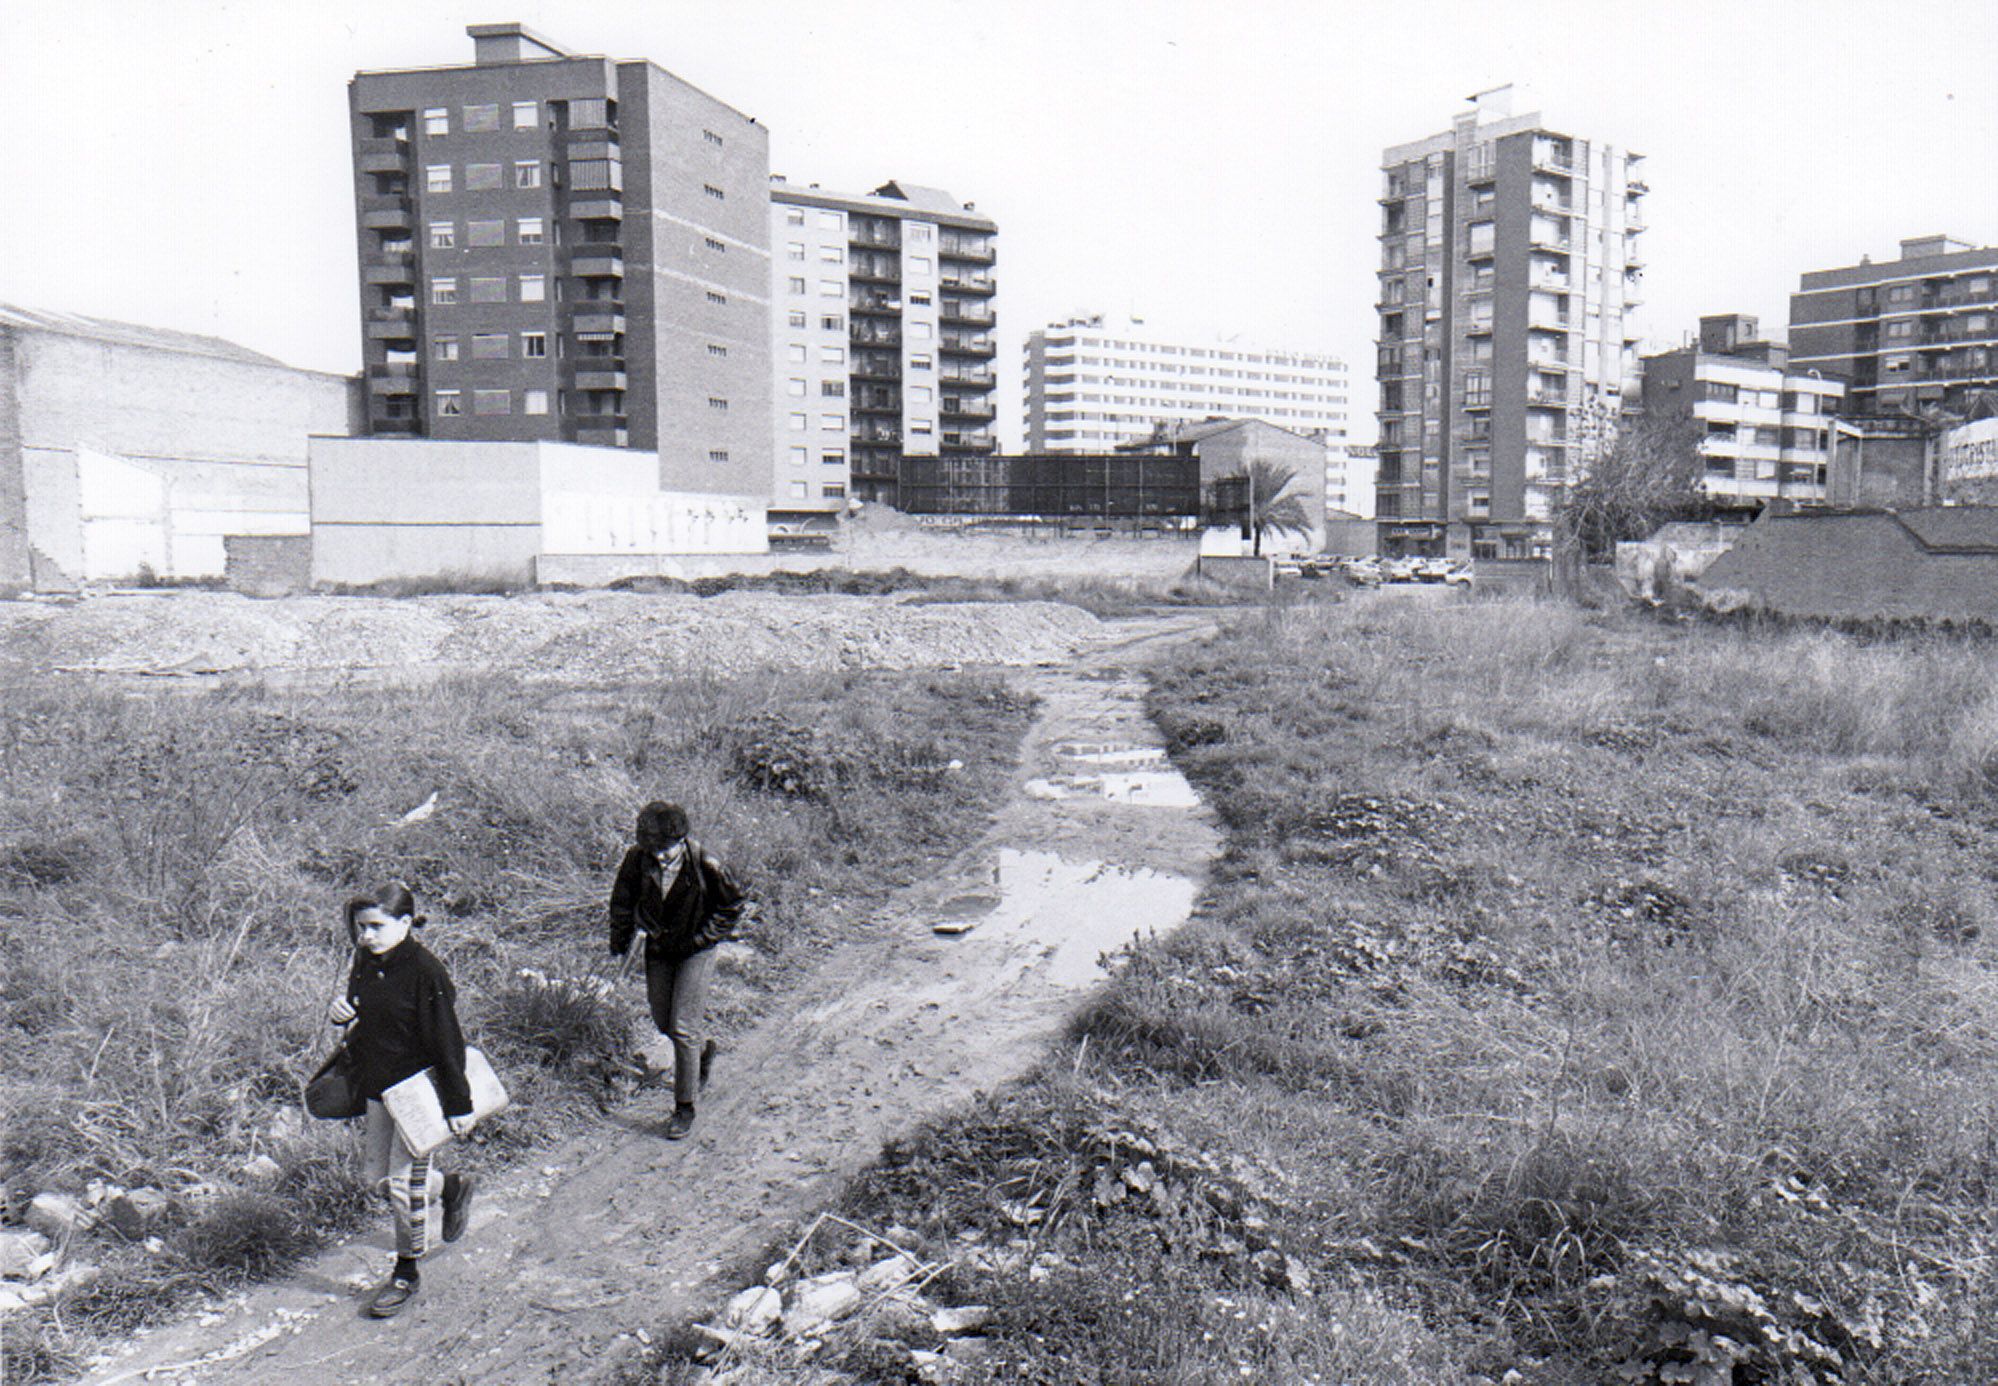 Fotos de la València desaparecida: El Campanar de los 80